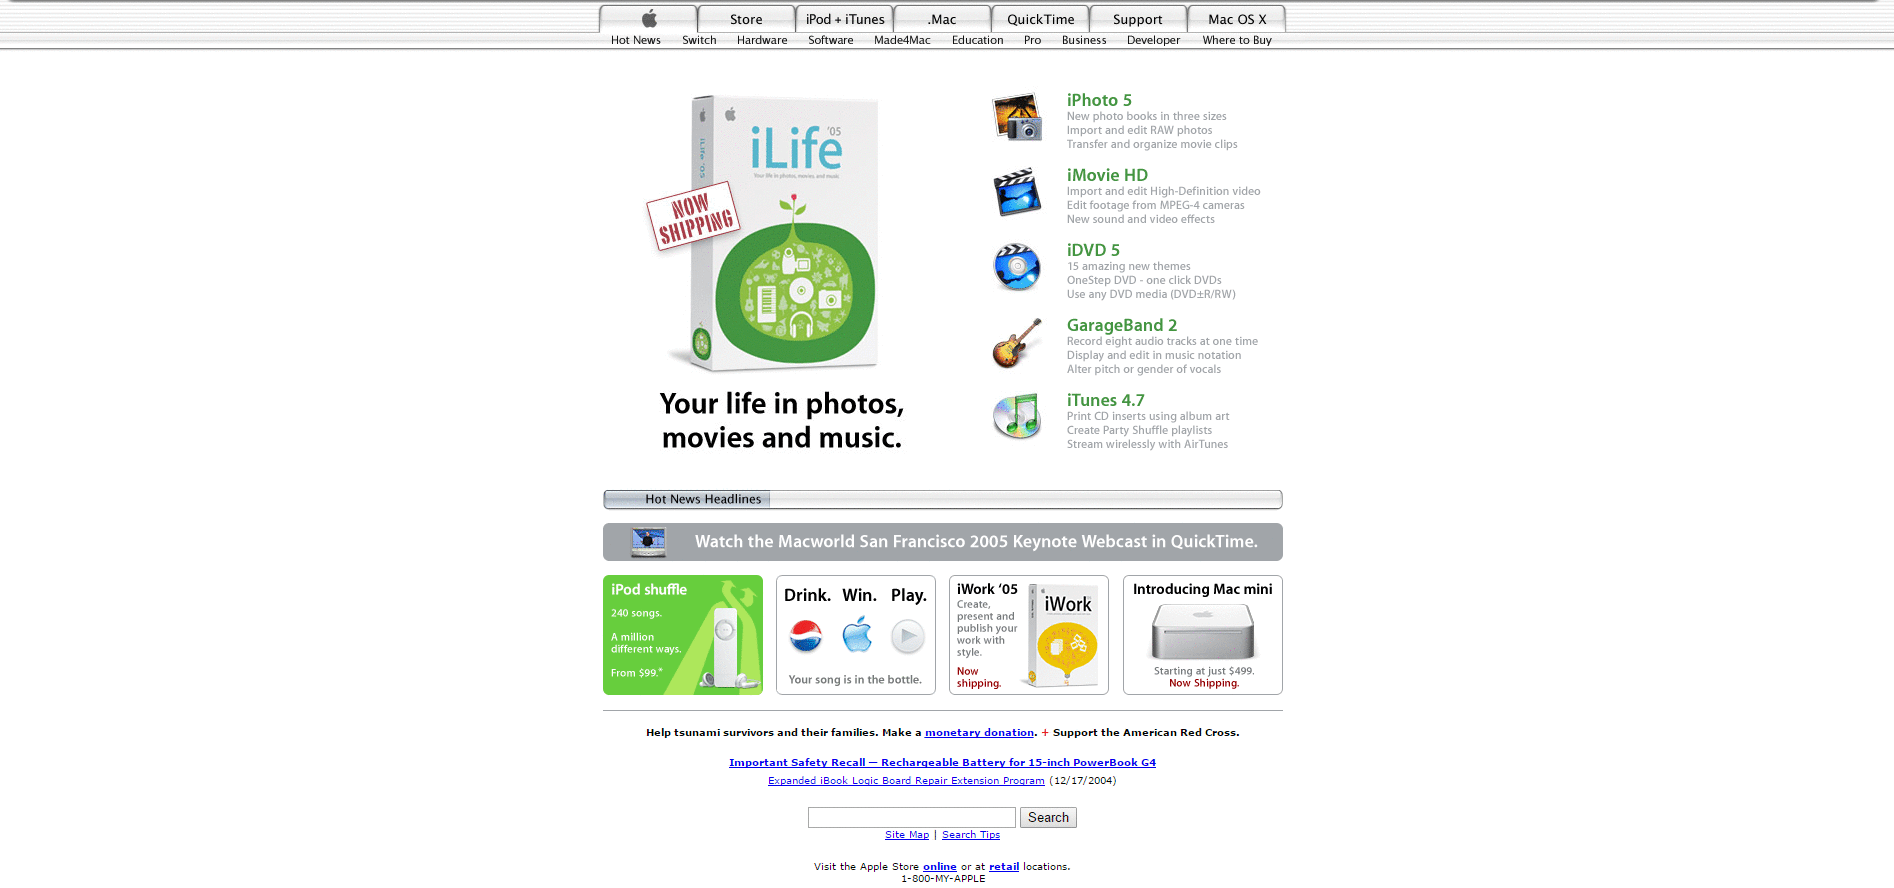 Website Design for apple.com in 2005